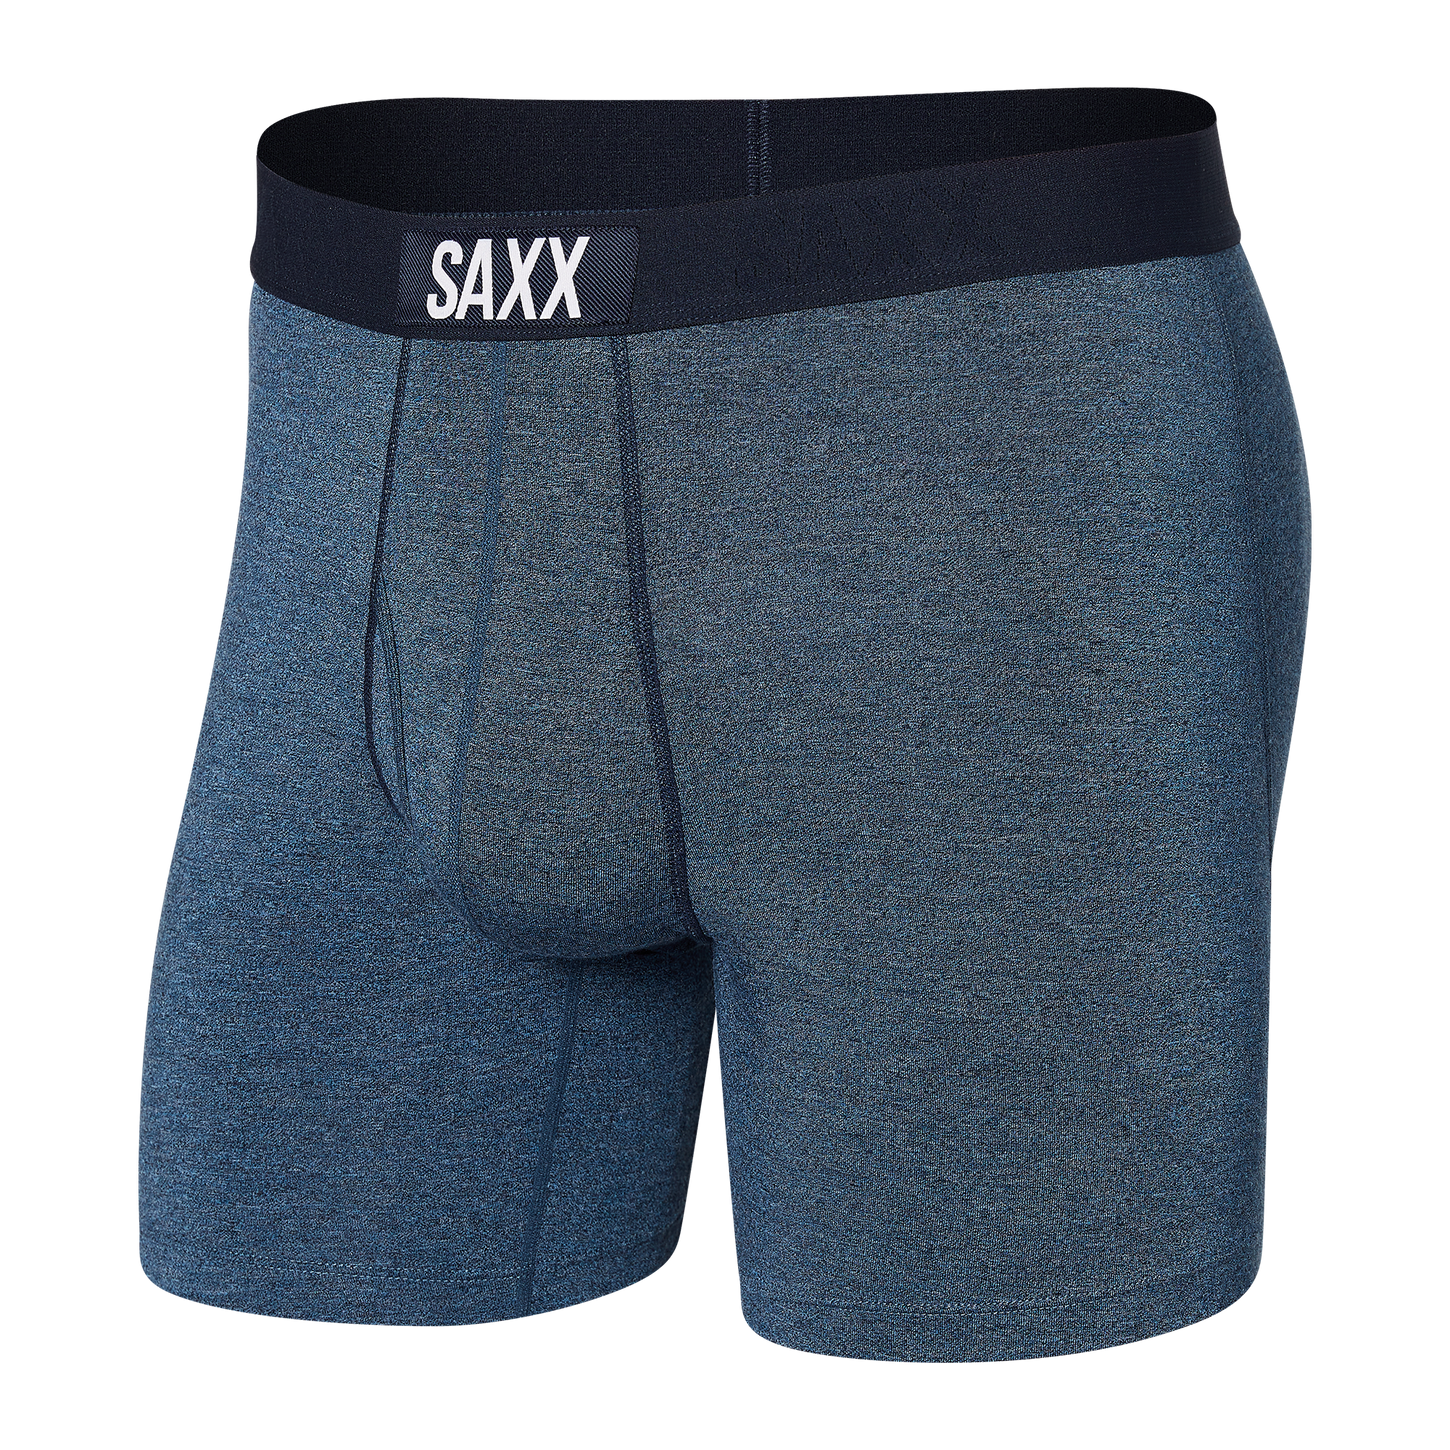 Saxx Men's Ultra Boxer Brief Apparel SAXX Small Indigo 